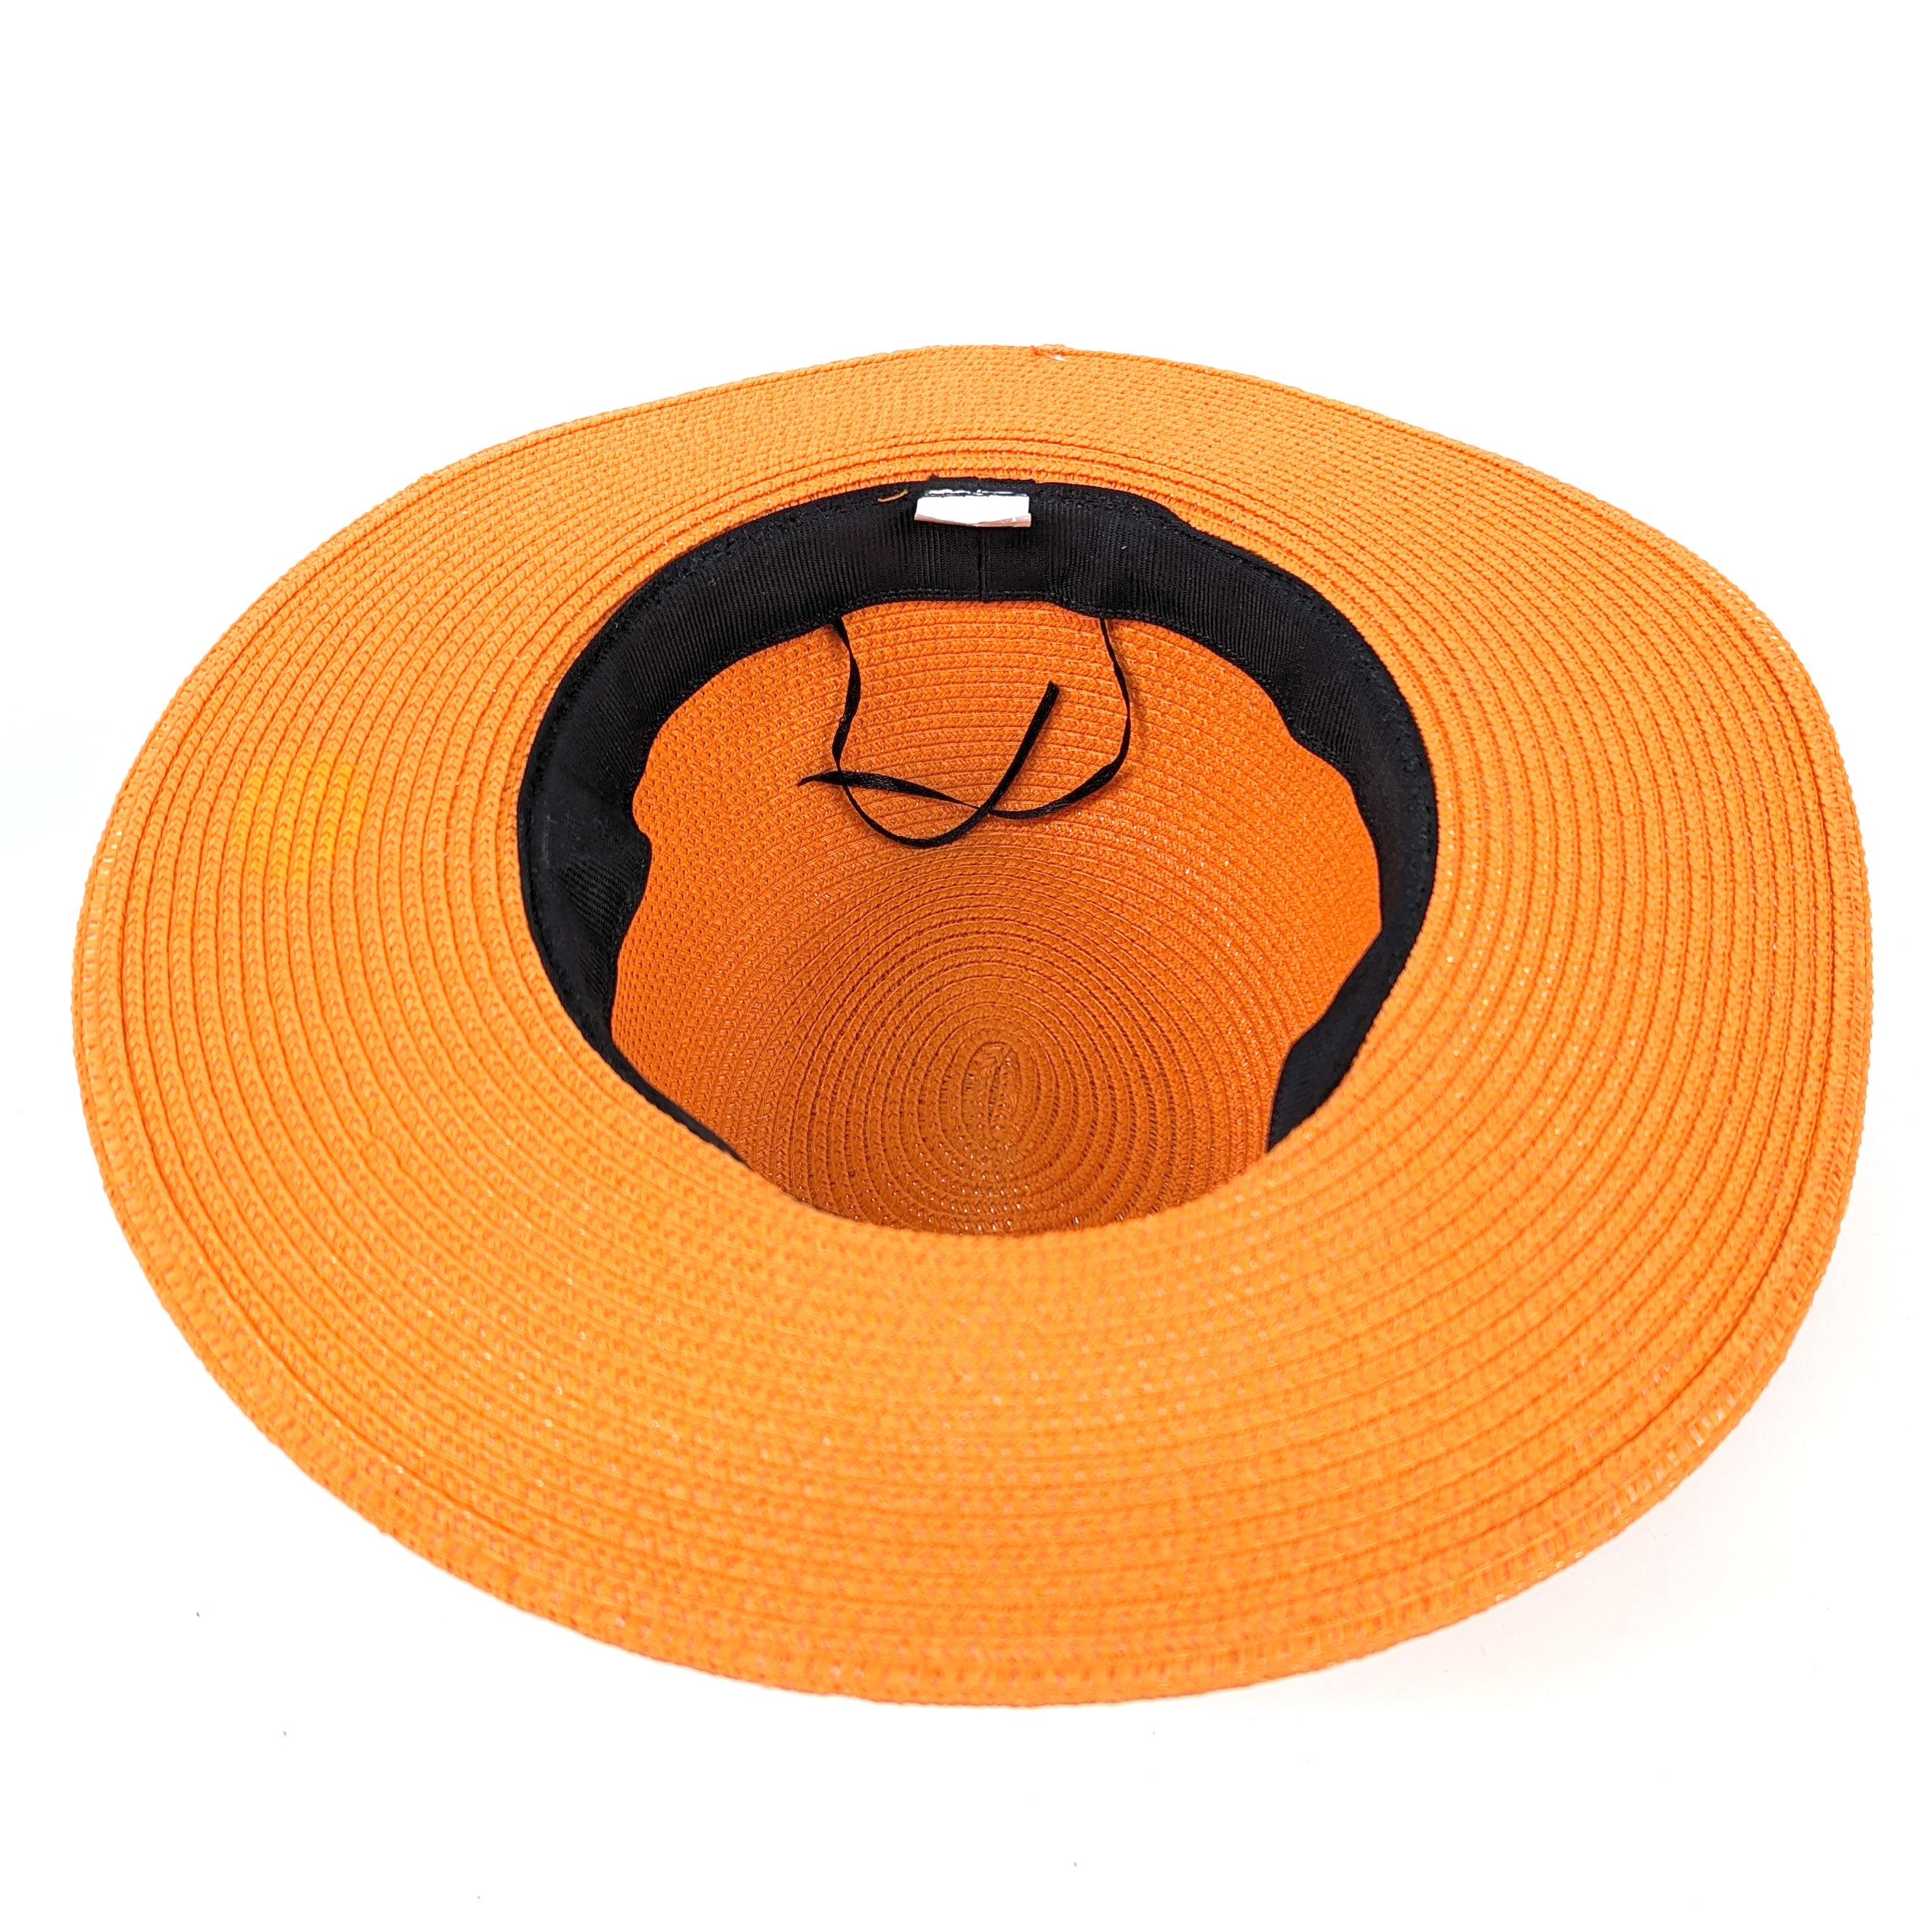 Orange Panama Folding Hat